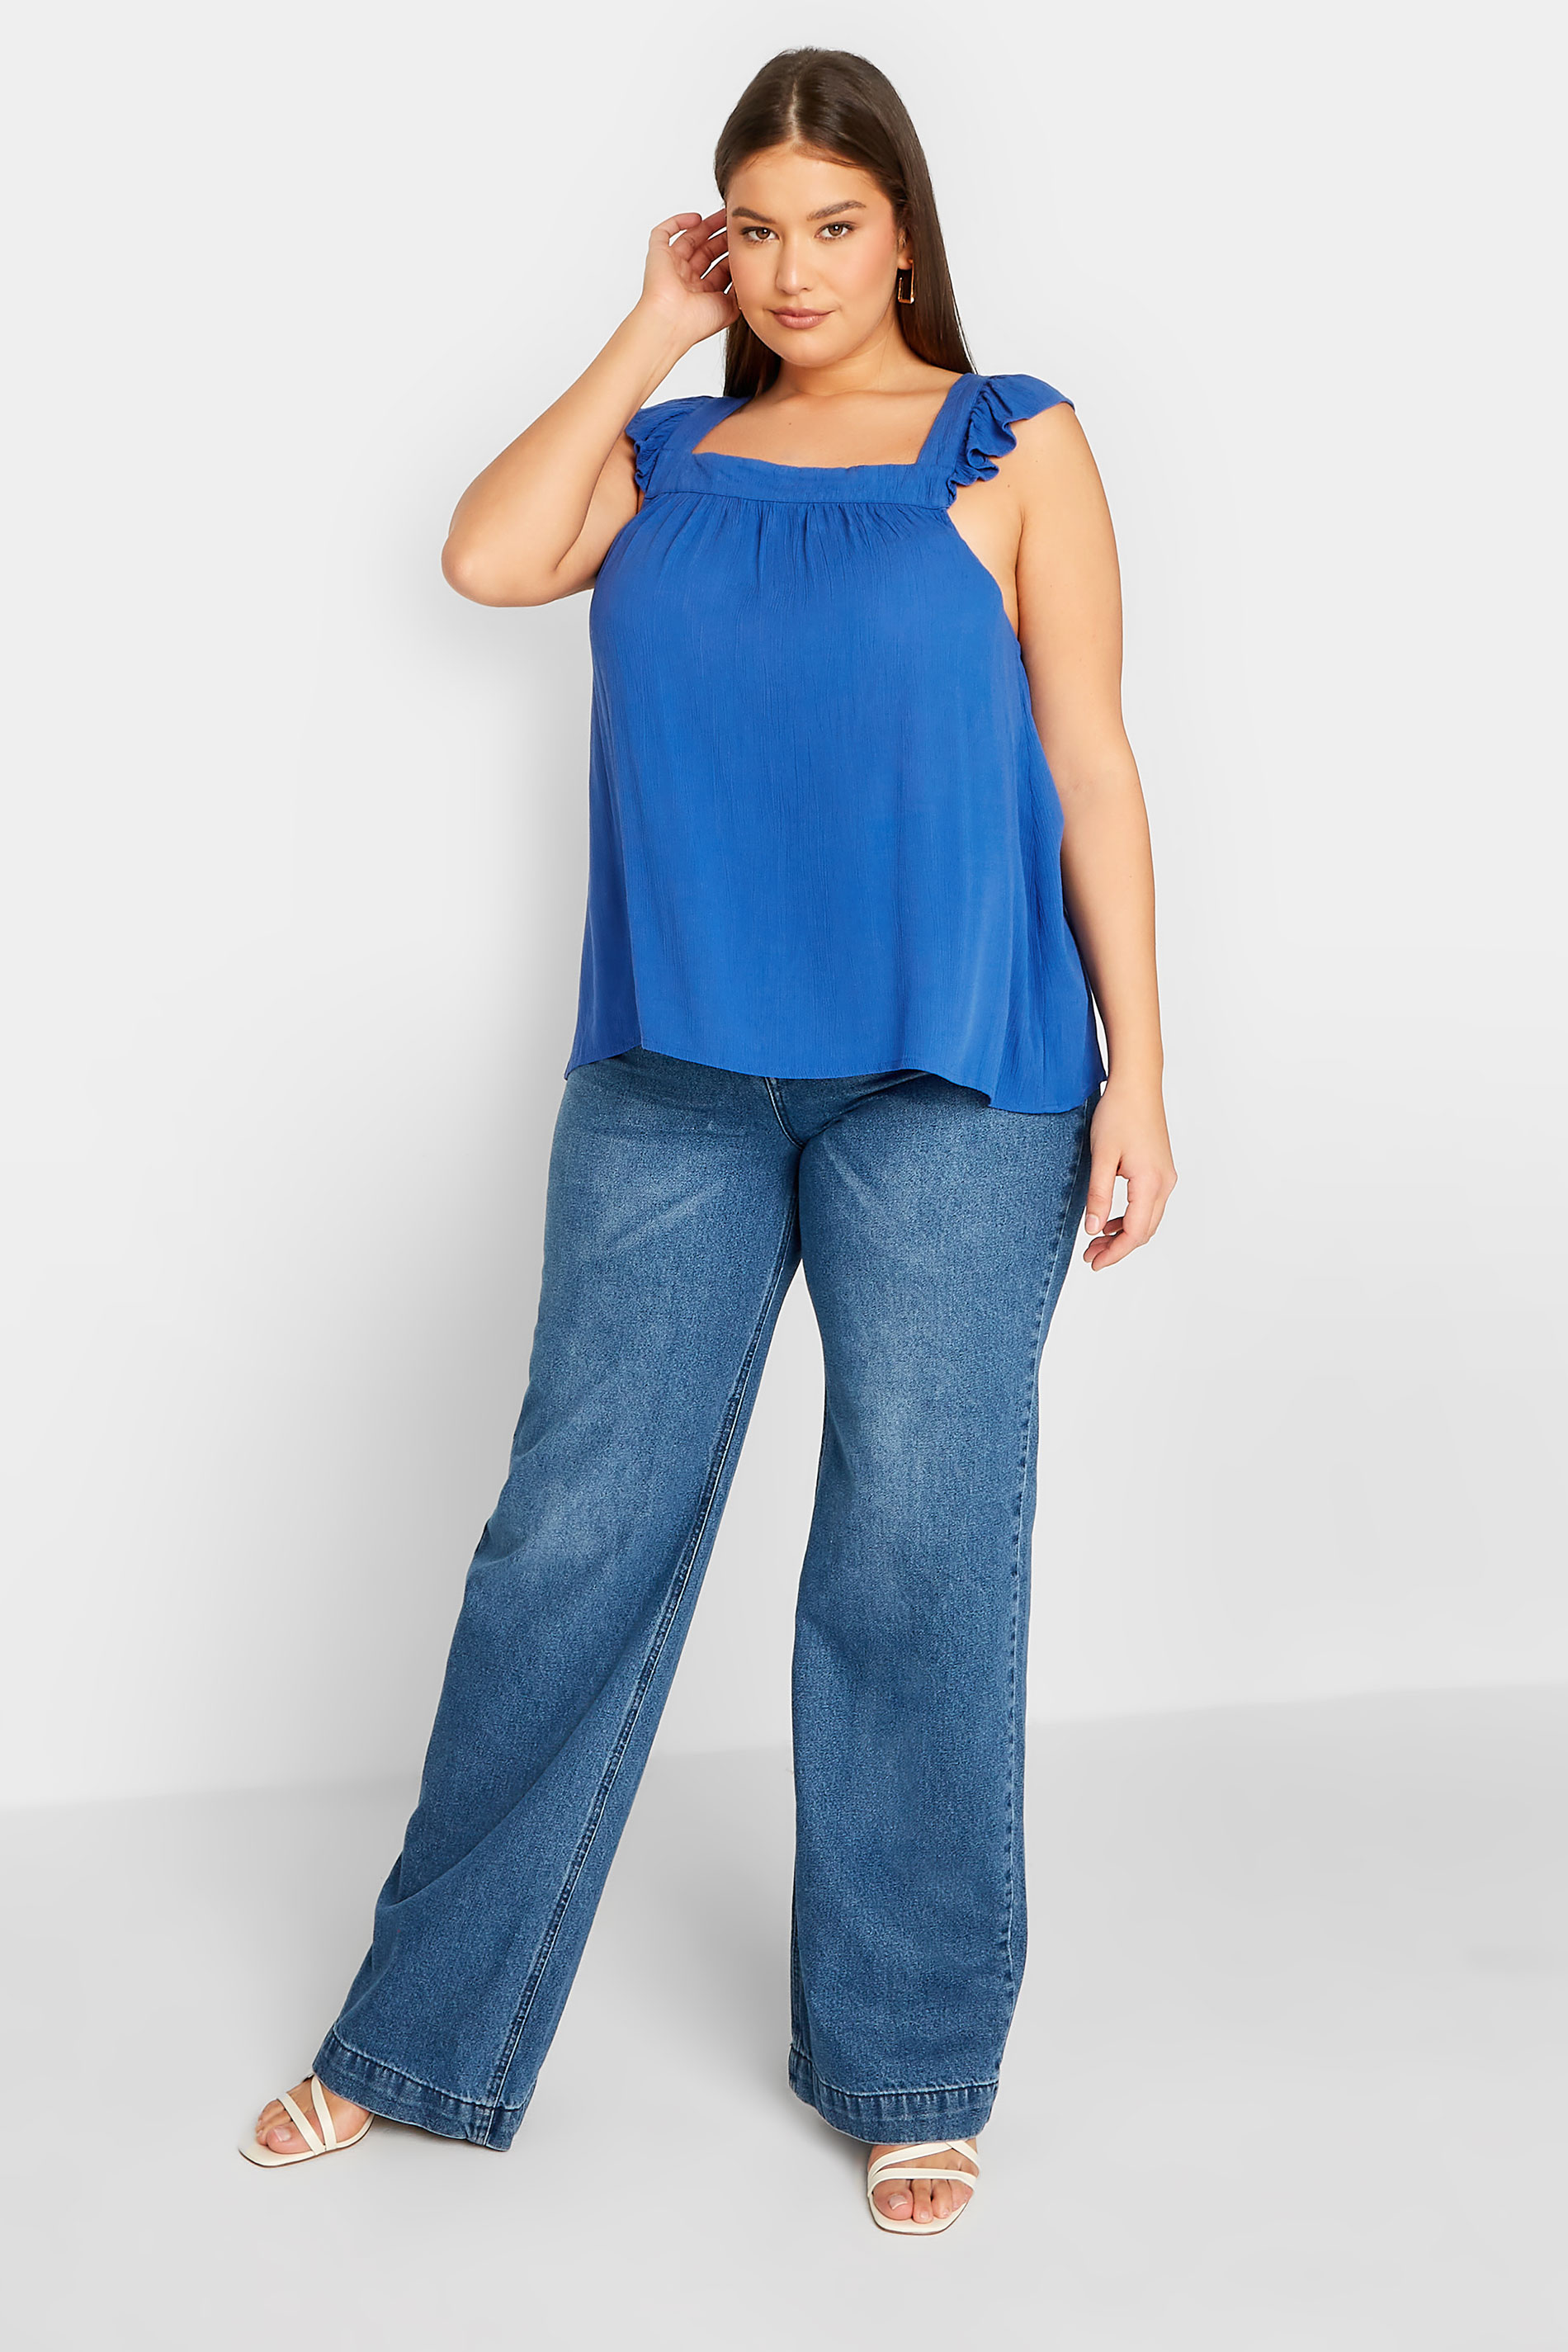 LTS Tall Women's Cobalt Blue Crinkle Frill Top | Long Tall Sally 2